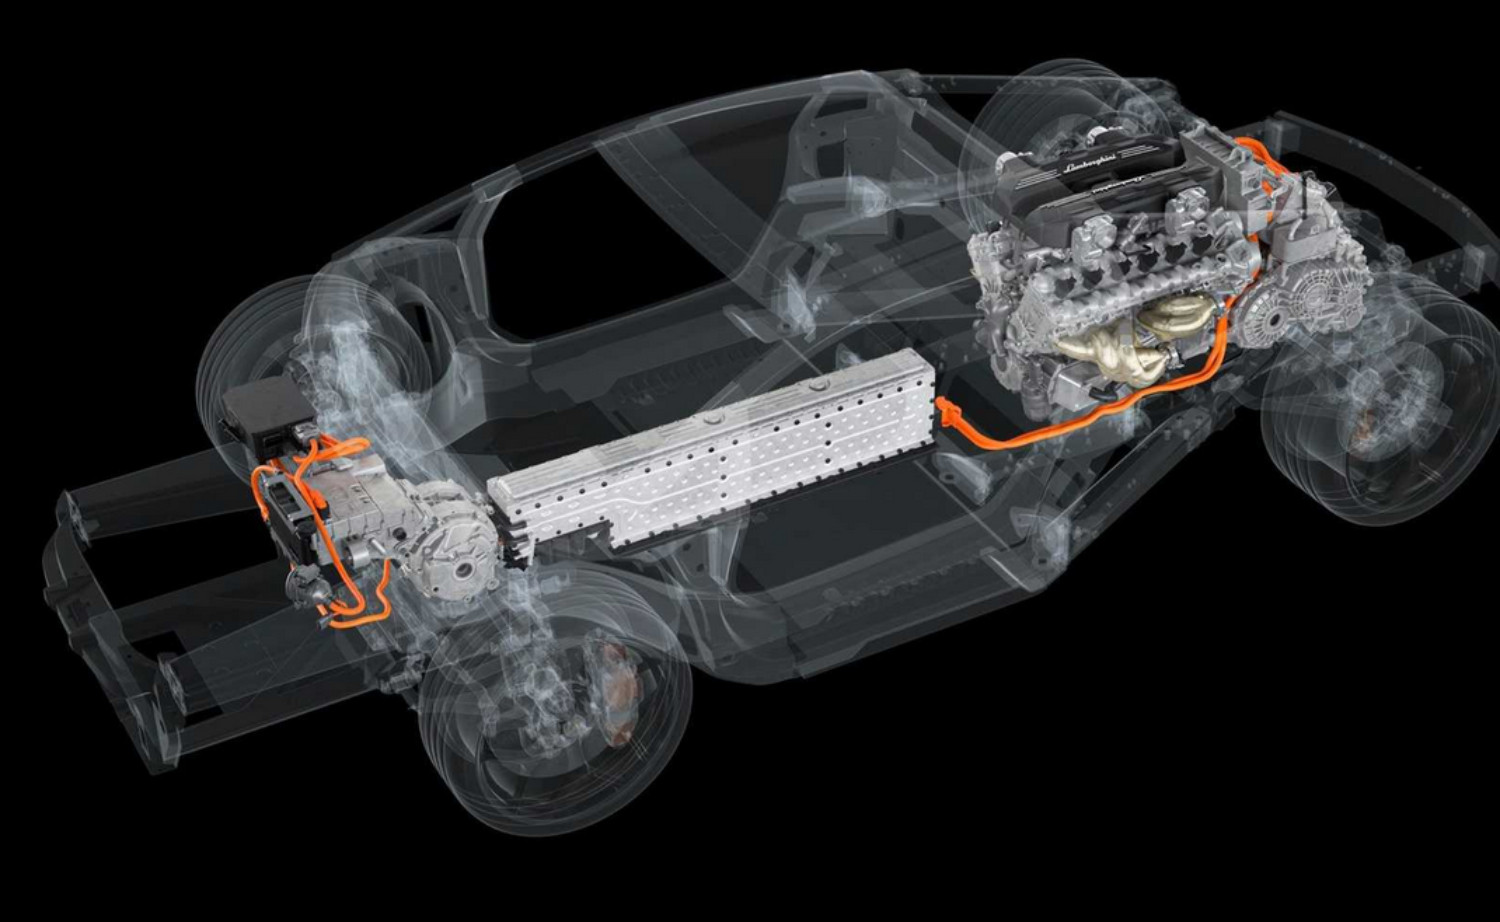 O sucessor do Aventador estreia um sistema híbrido plug-in com novo V12